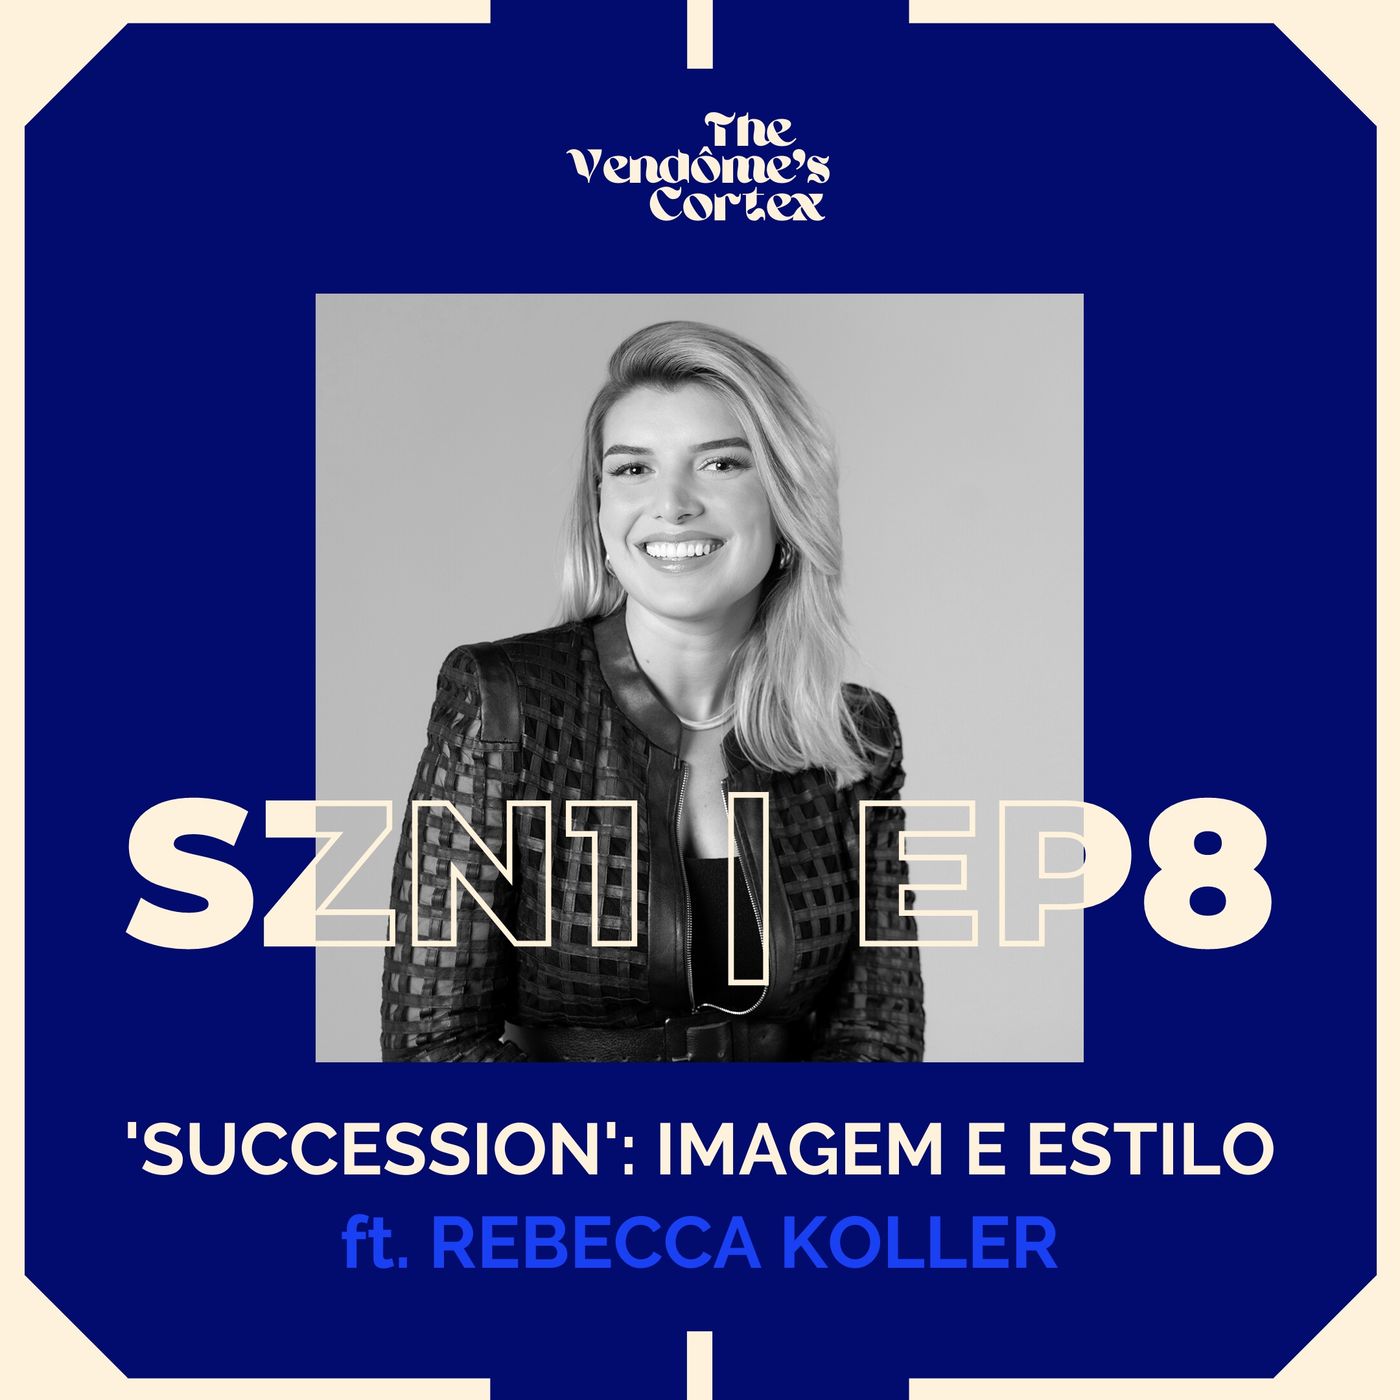 SZN1 EP8 - 'SUCCESSION': ANÁLISE DE IMAGEM E ESTILO